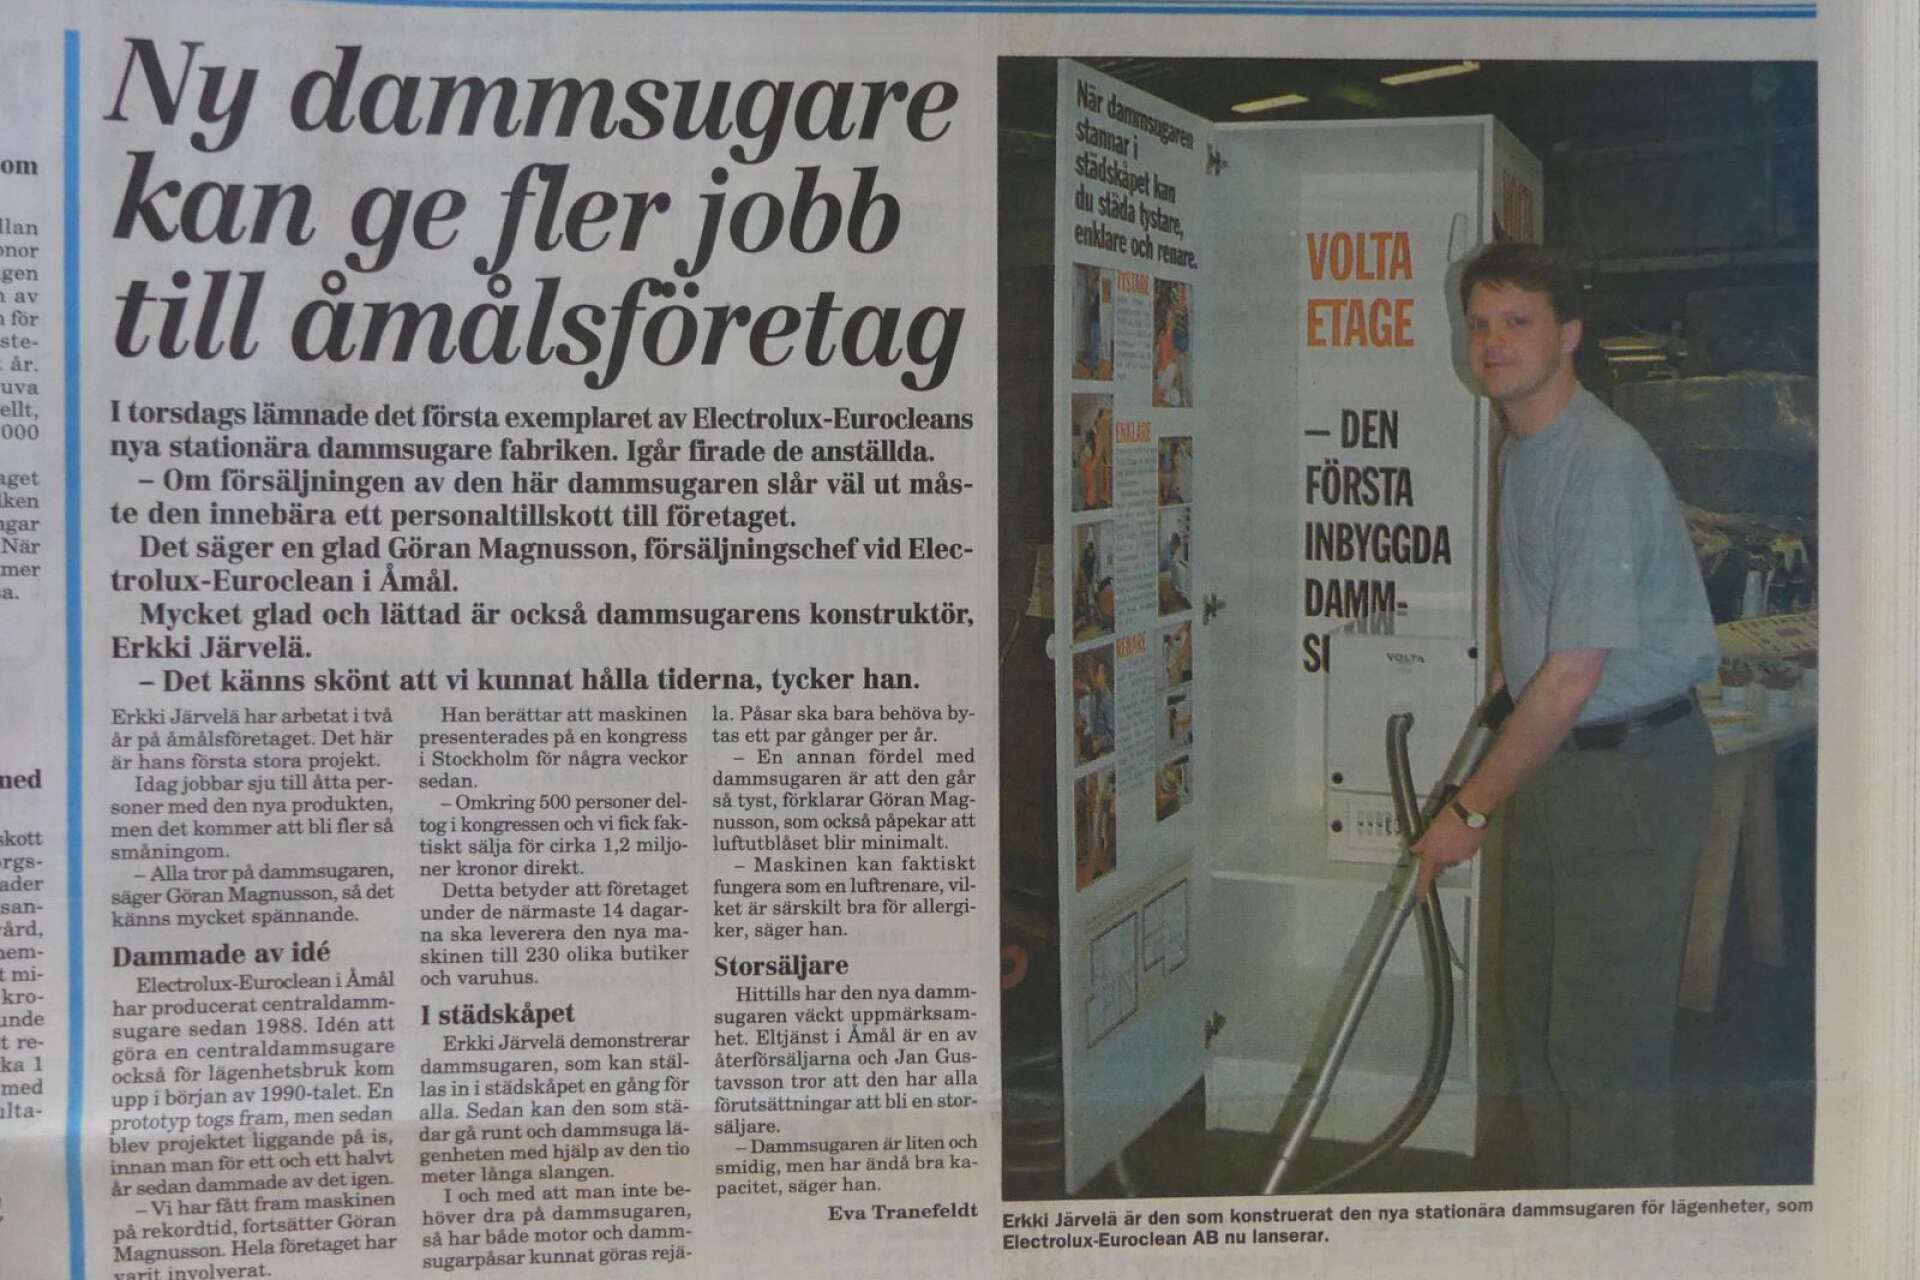 Erkki Järvelä demonstrerade 1997 en ny stationär och Åmålstillverkad dammsugare för lägenheter.